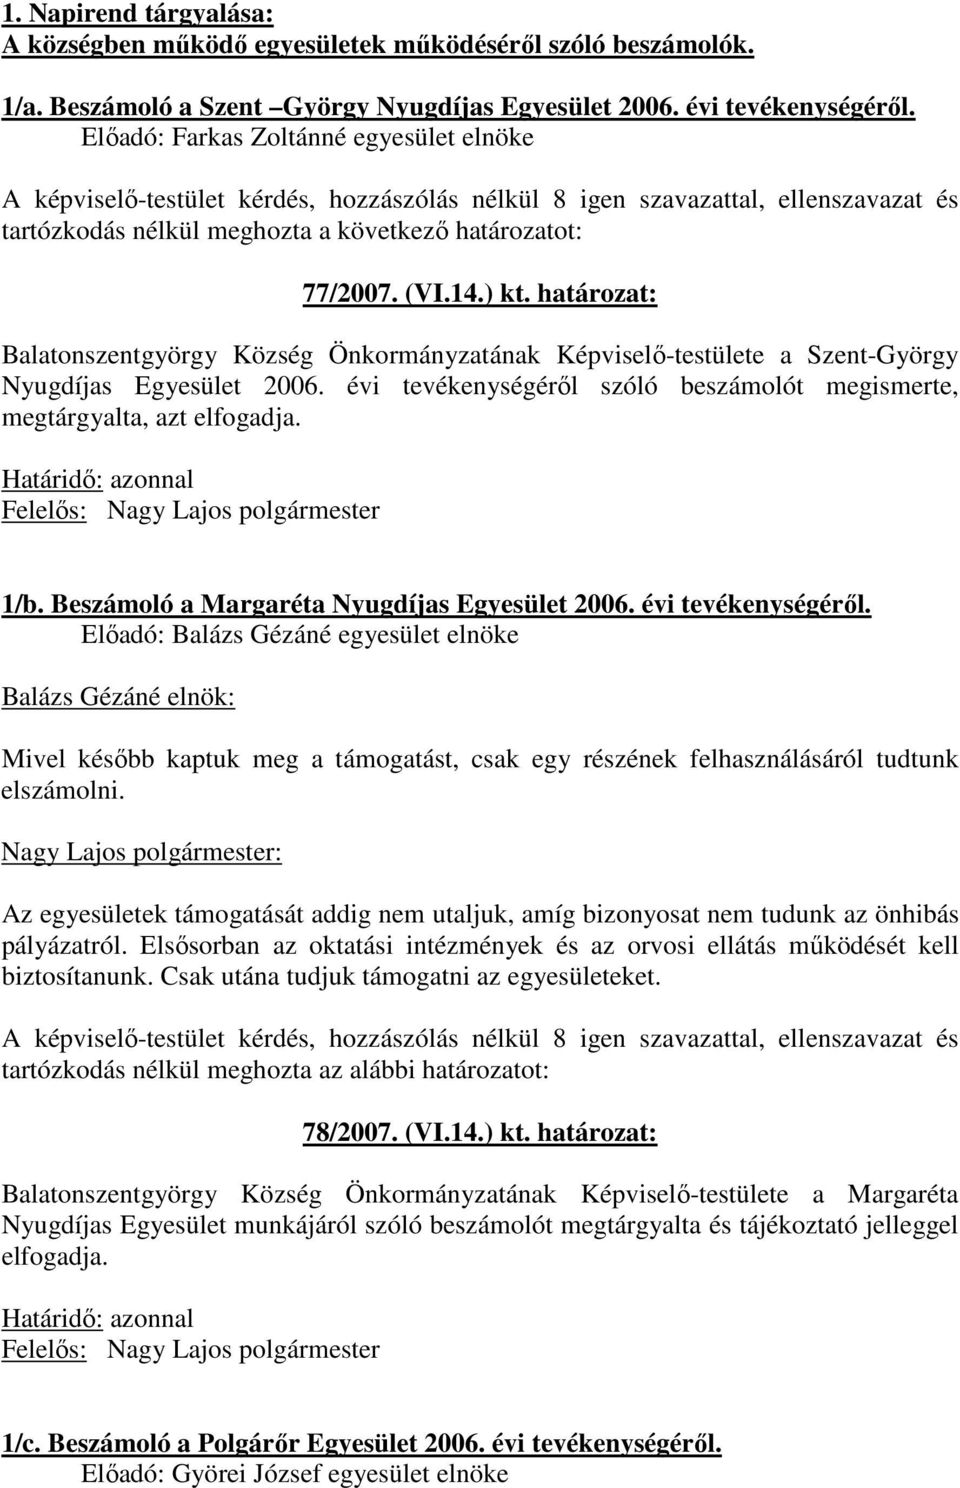 határozat: Balatonszentgyörgy Község Önkormányzatának Képviselı-testülete a Szent-György Nyugdíjas Egyesület 2006. évi tevékenységérıl szóló beszámolót megismerte, megtárgyalta, azt elfogadja. 1/b.